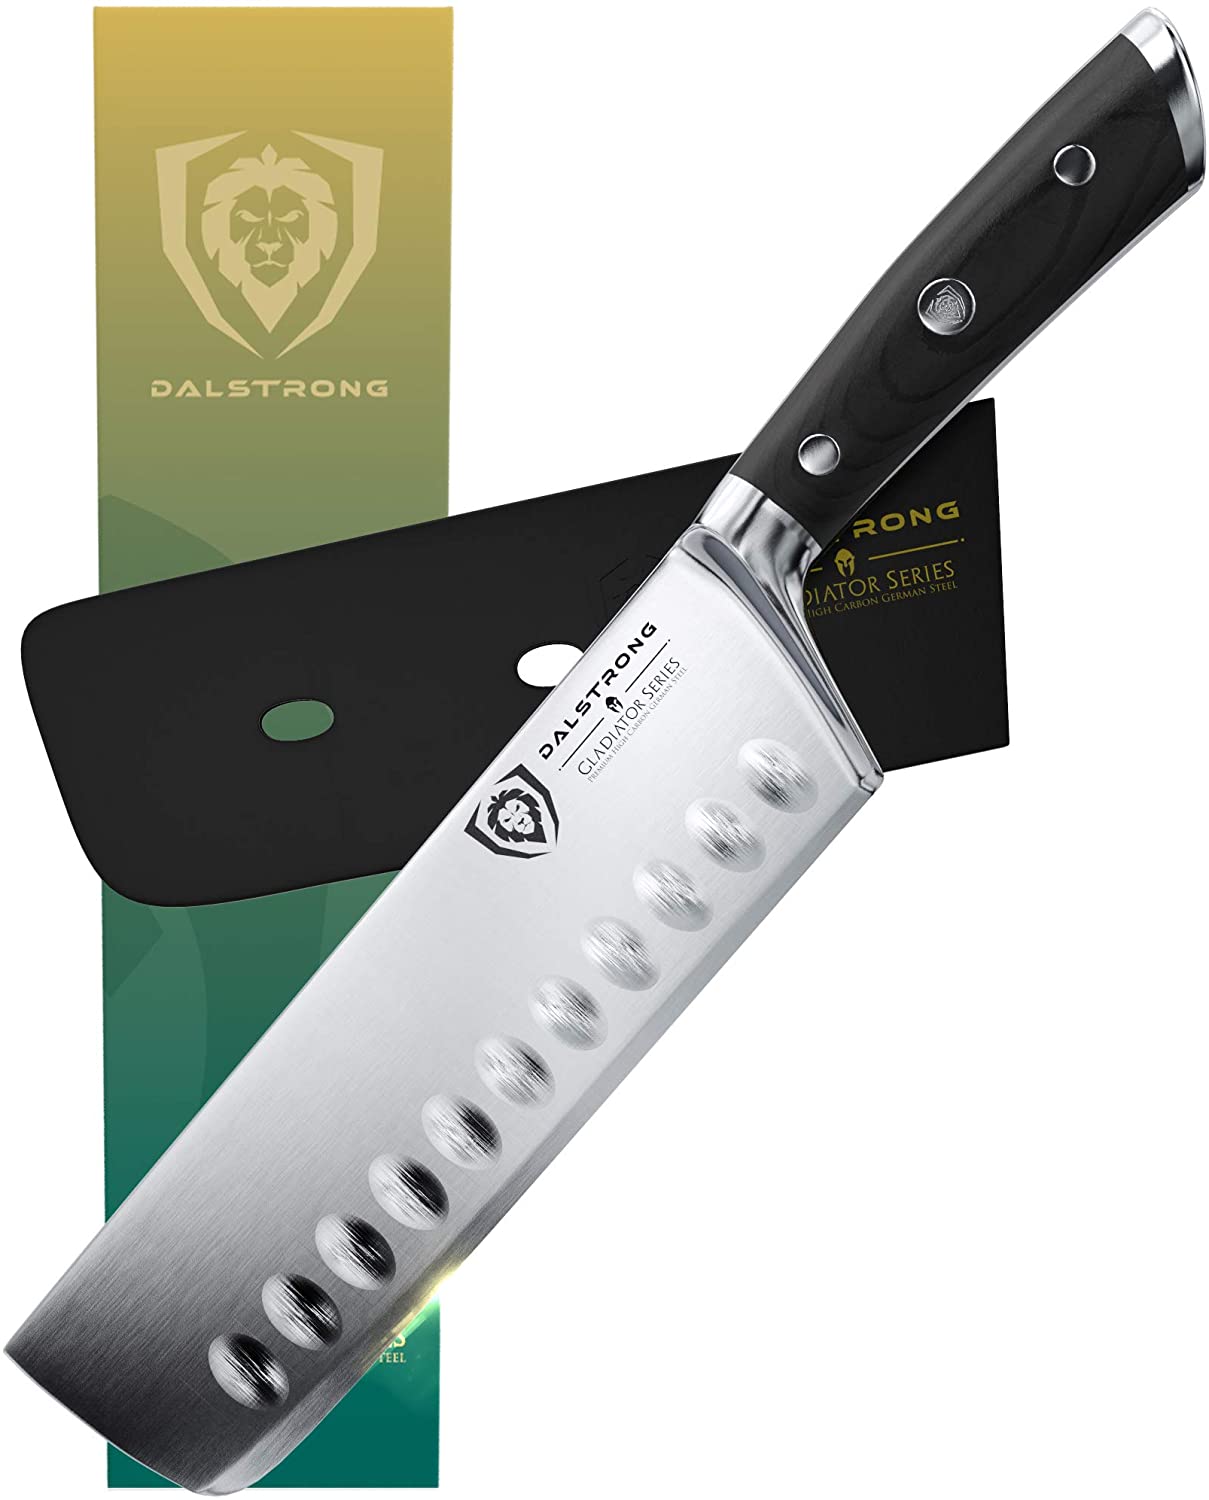 Best overall nakiri Japanese vegetable knife- DALSTRONG 7 Gladiator Series